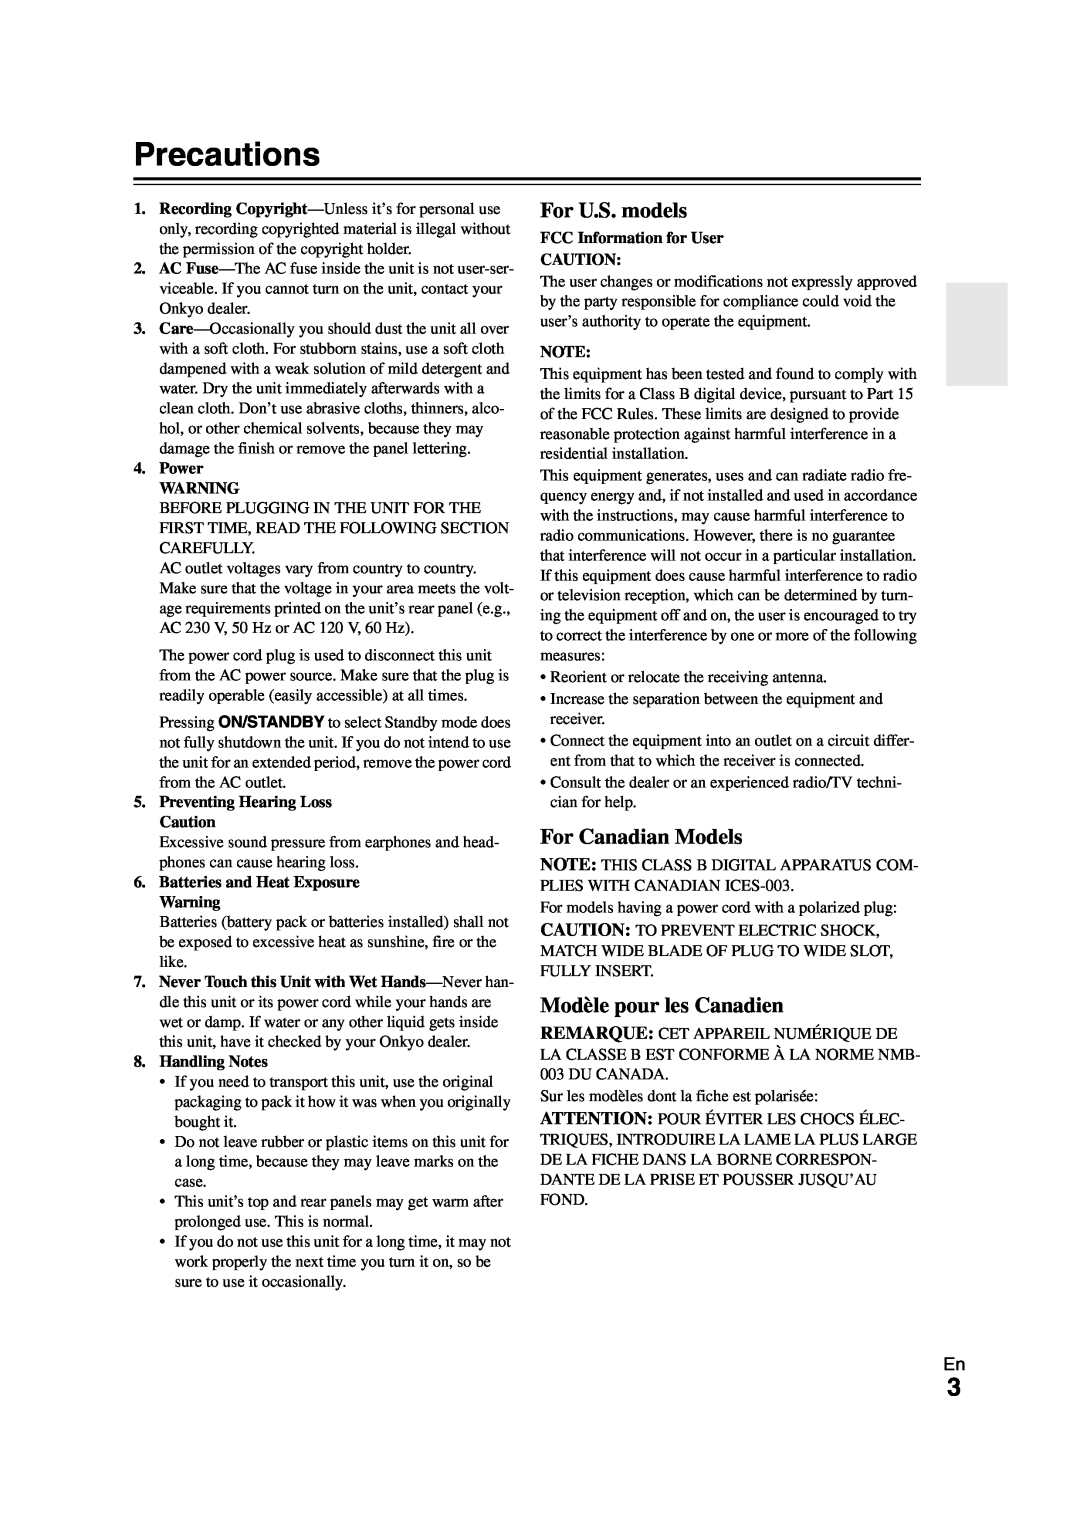 Onkyo 29400468 instruction manual Precautions, For U.S. models, For Canadian Models, Modèle pour les Canadien 